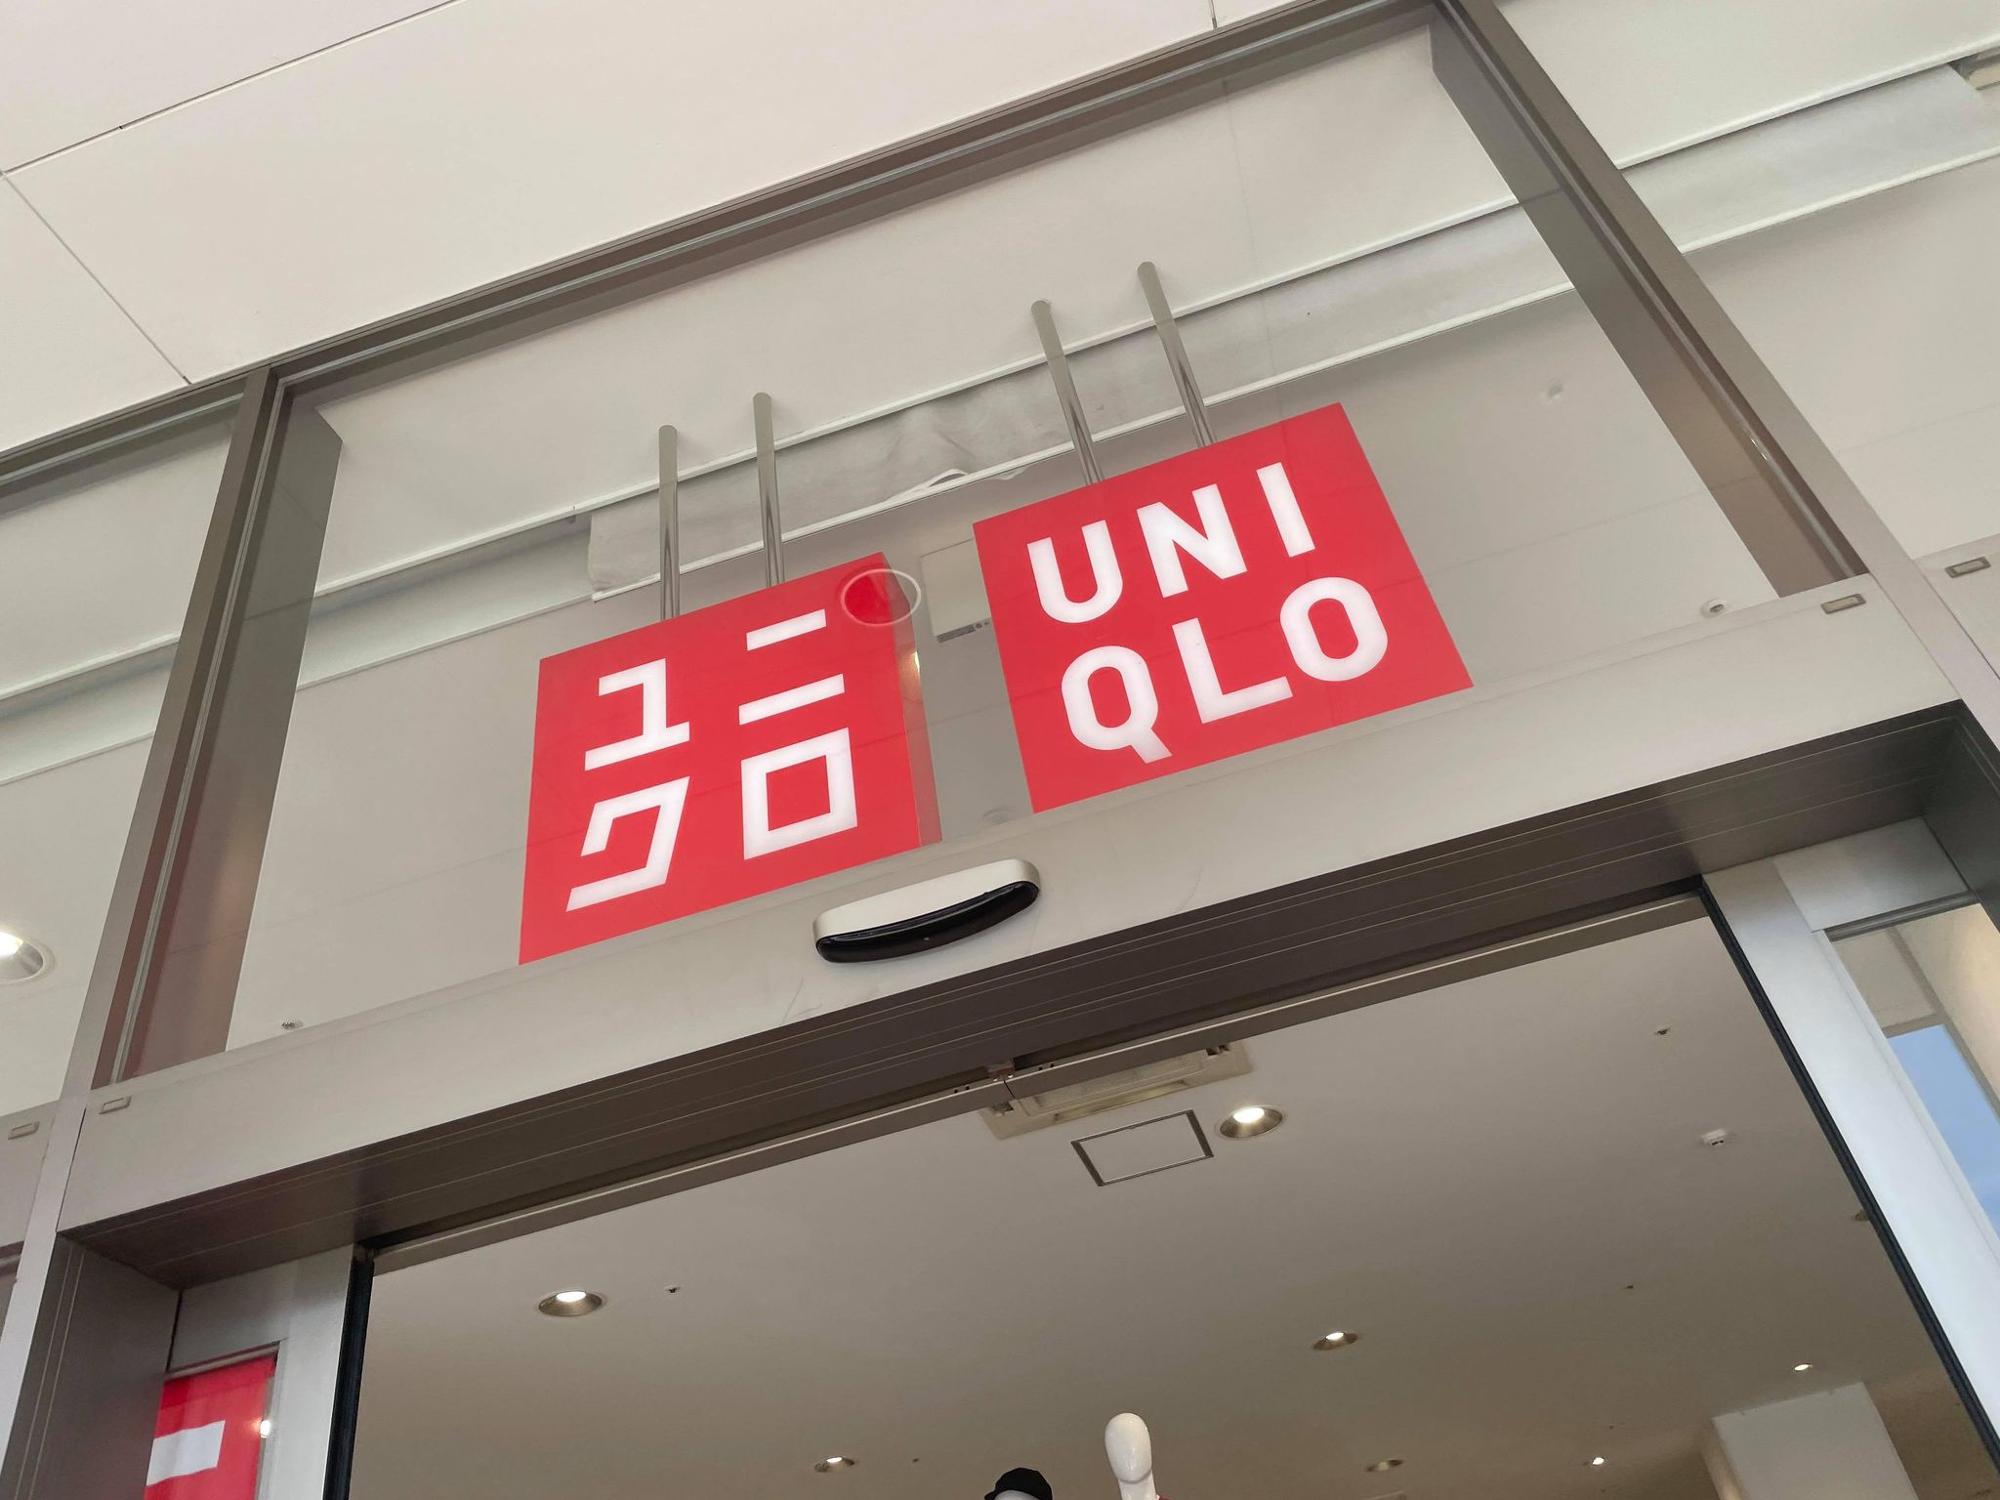 東大阪市 ニトリモール東大阪店の１階にある Uniqlo ユニクロ が閉店するようです なかしまあすか Yahoo Japan クリエイターズプログラム